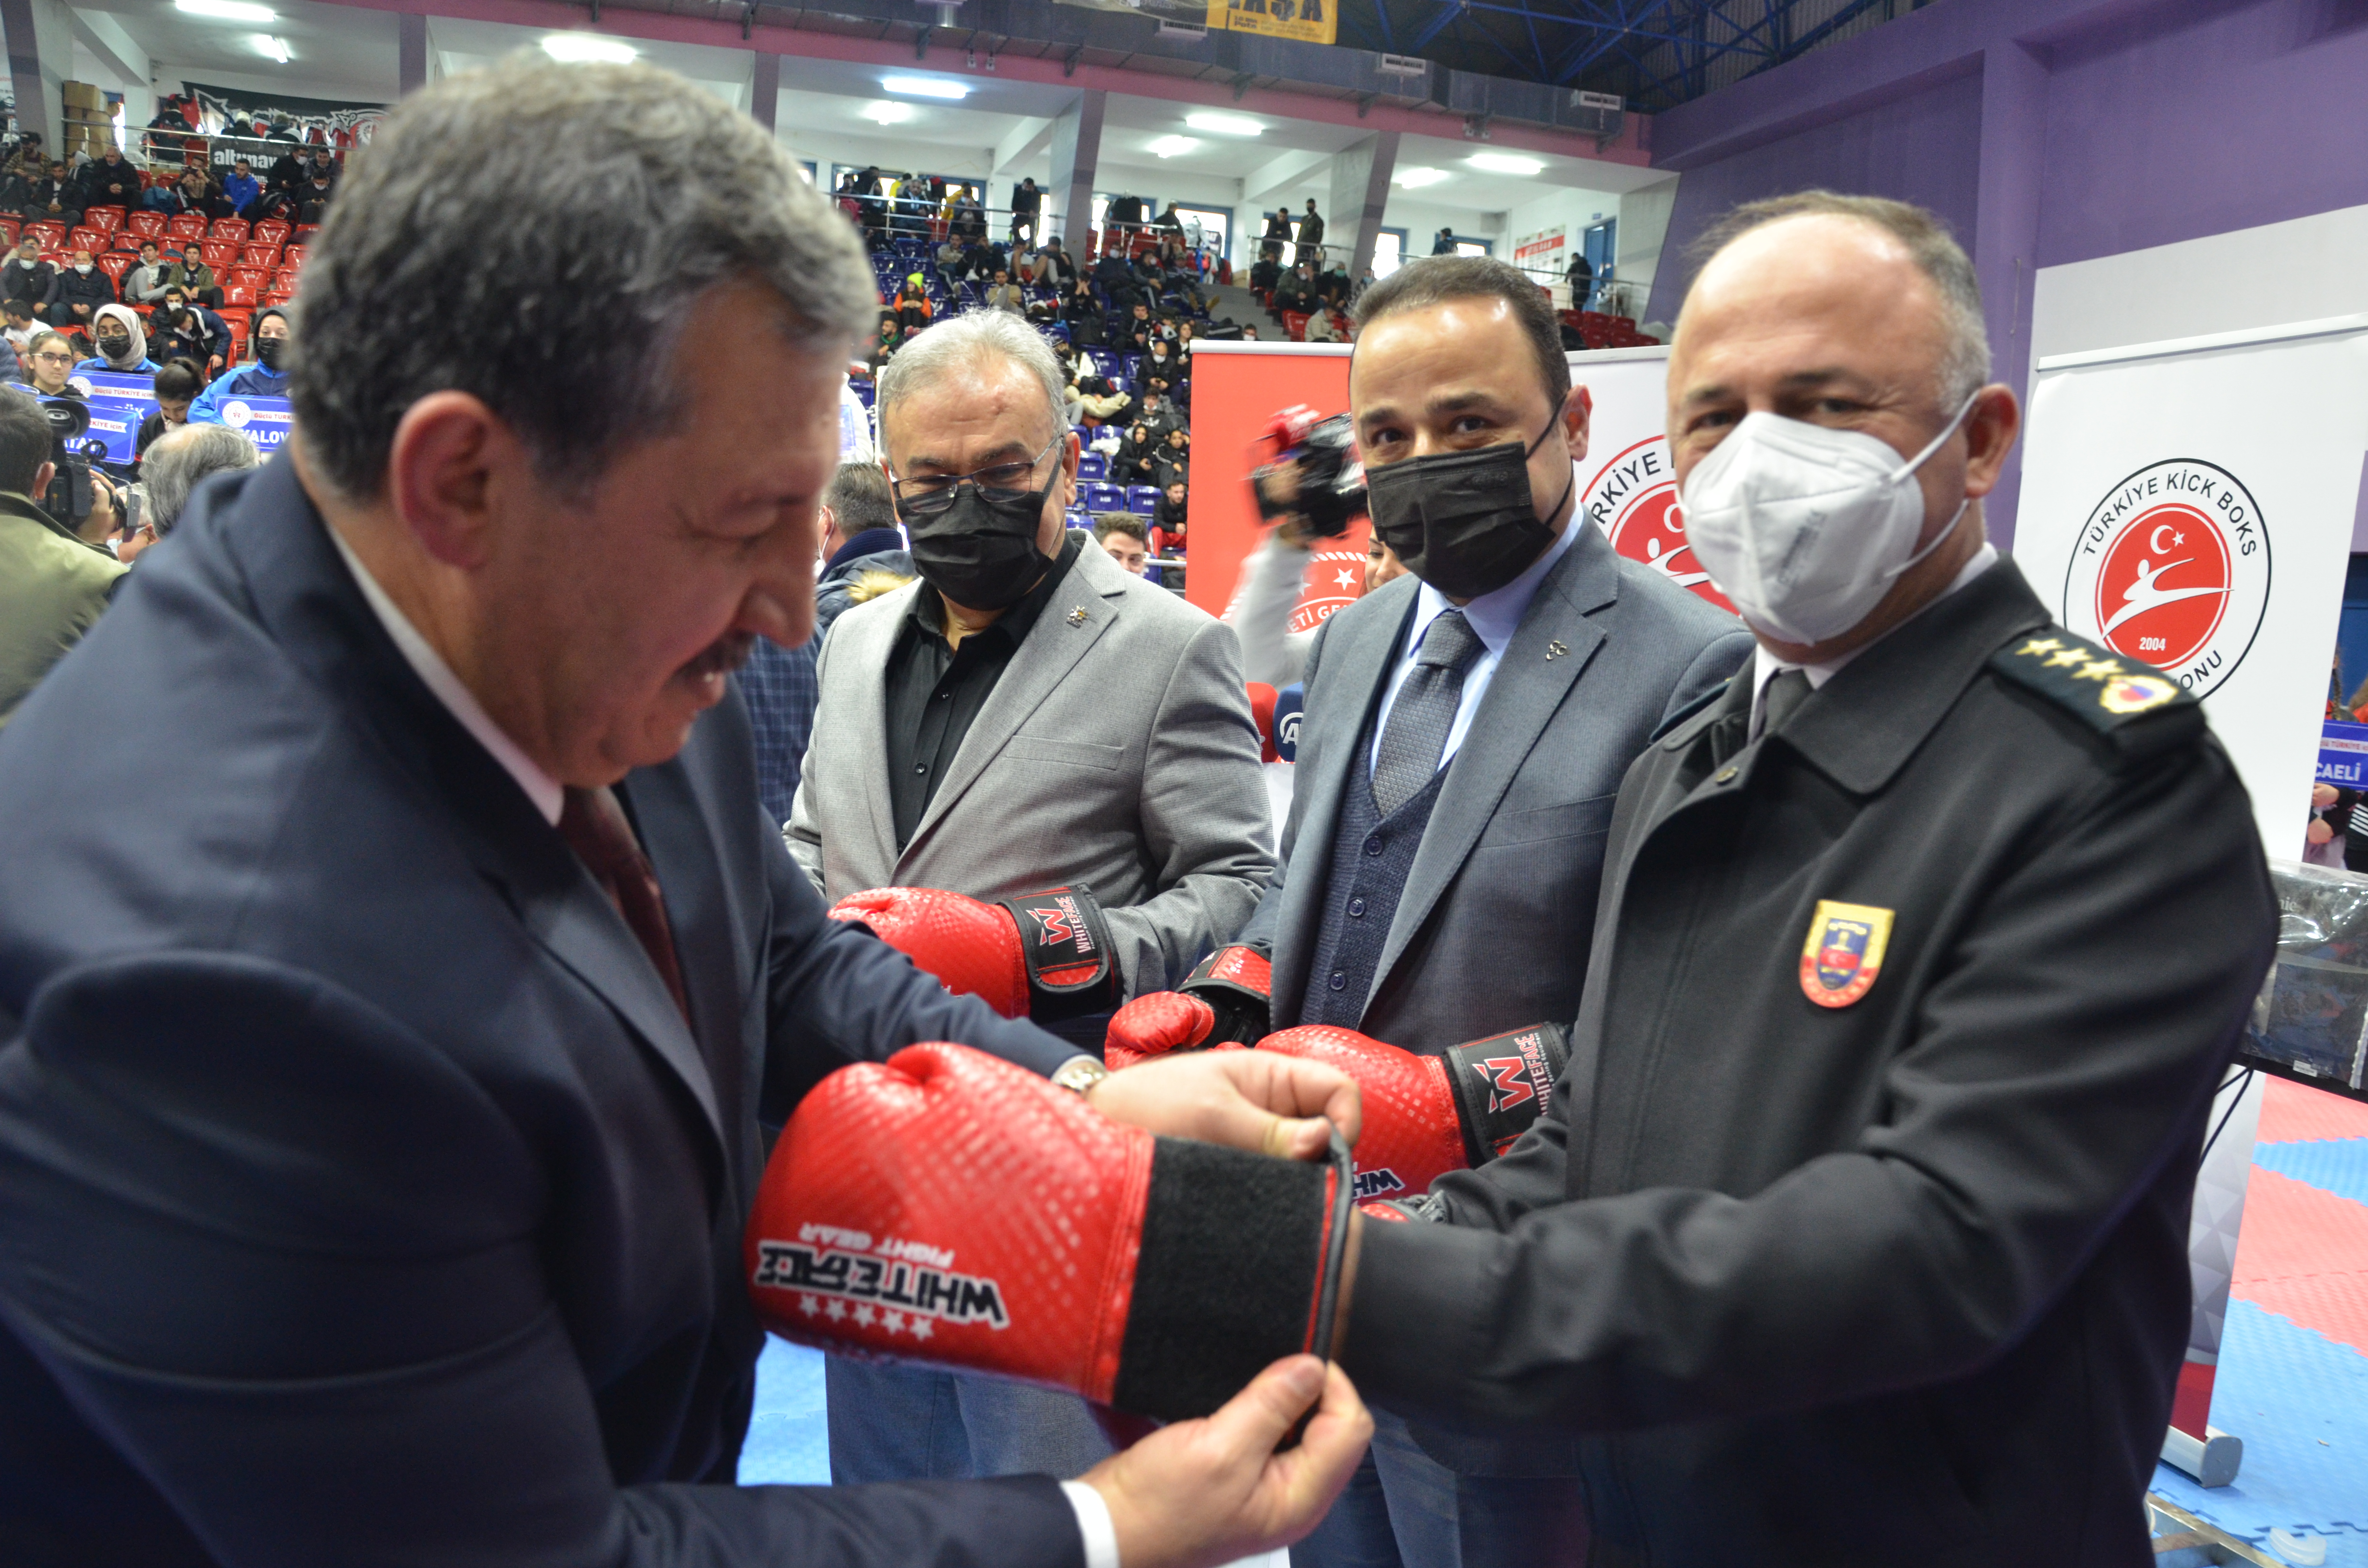 Ordu Türkiye Kick Boks Turnuvası Açılış Töreni